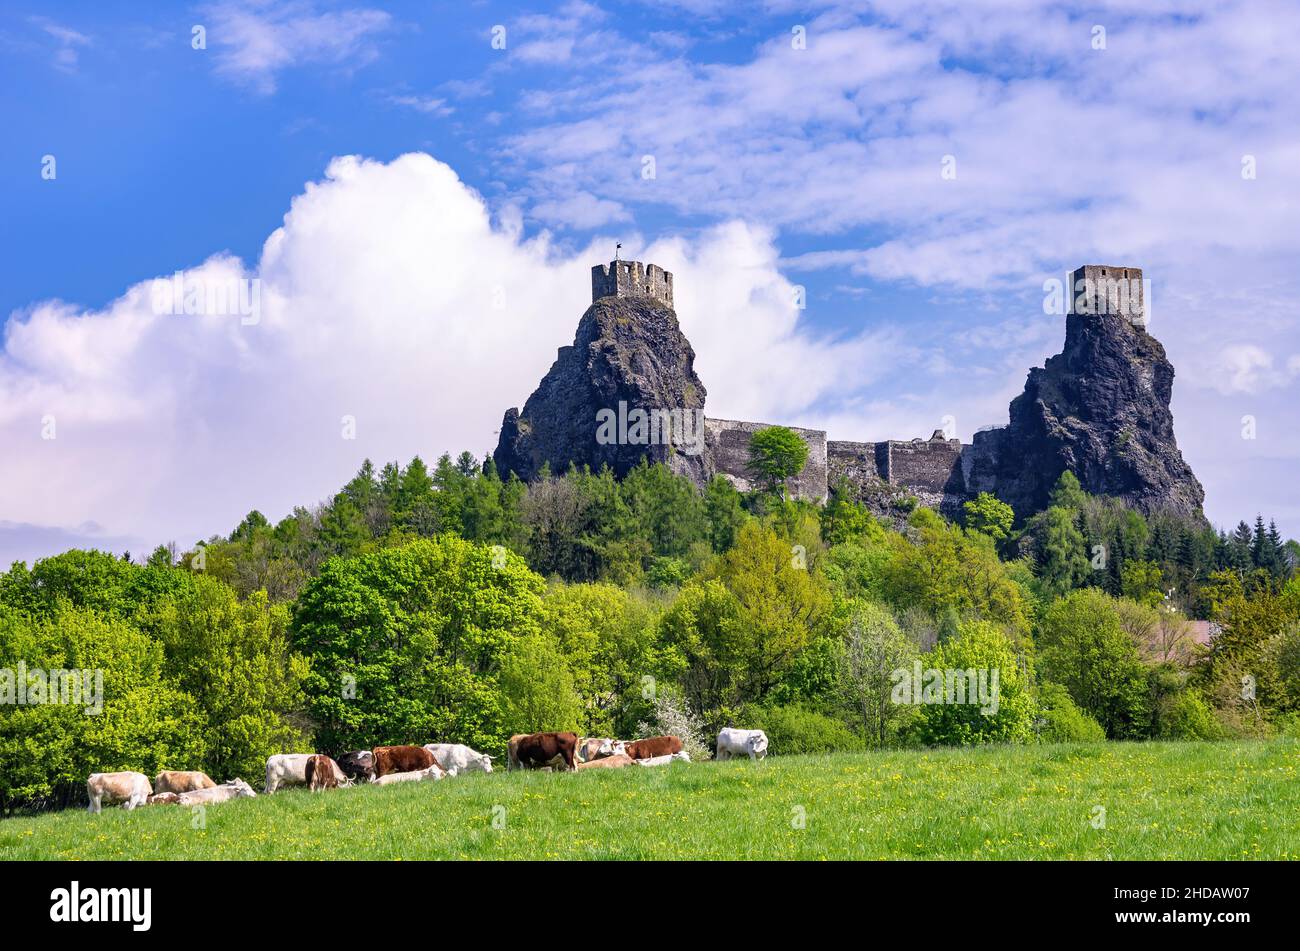 View of Trosky Castle in its scenic rural environment in Rovensko pod Troskami, Bohemian Paradise (Cesky Raj), Kralovehradecky kraj, Czech Republic. Stock Photo